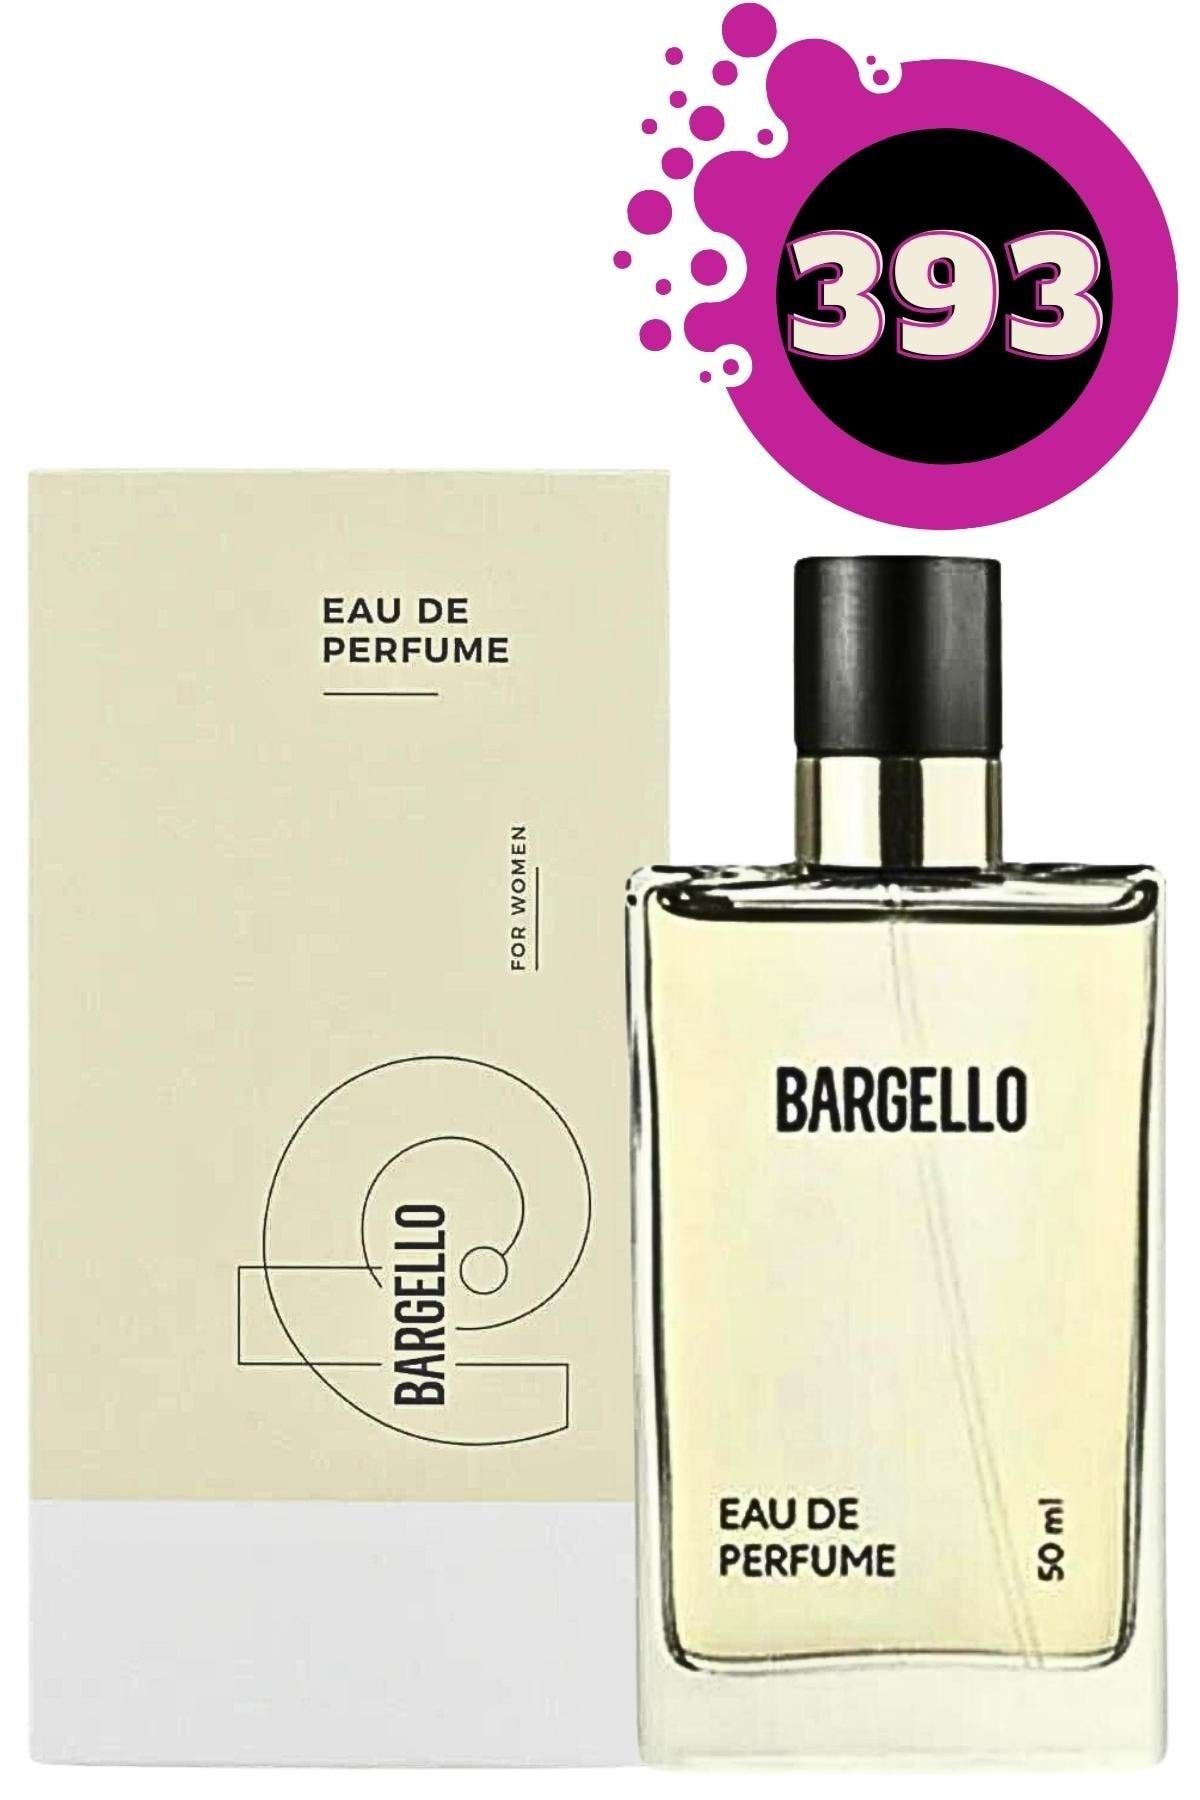 Bargello 393 Edp Floral 50 Ml Kadın Parfüm